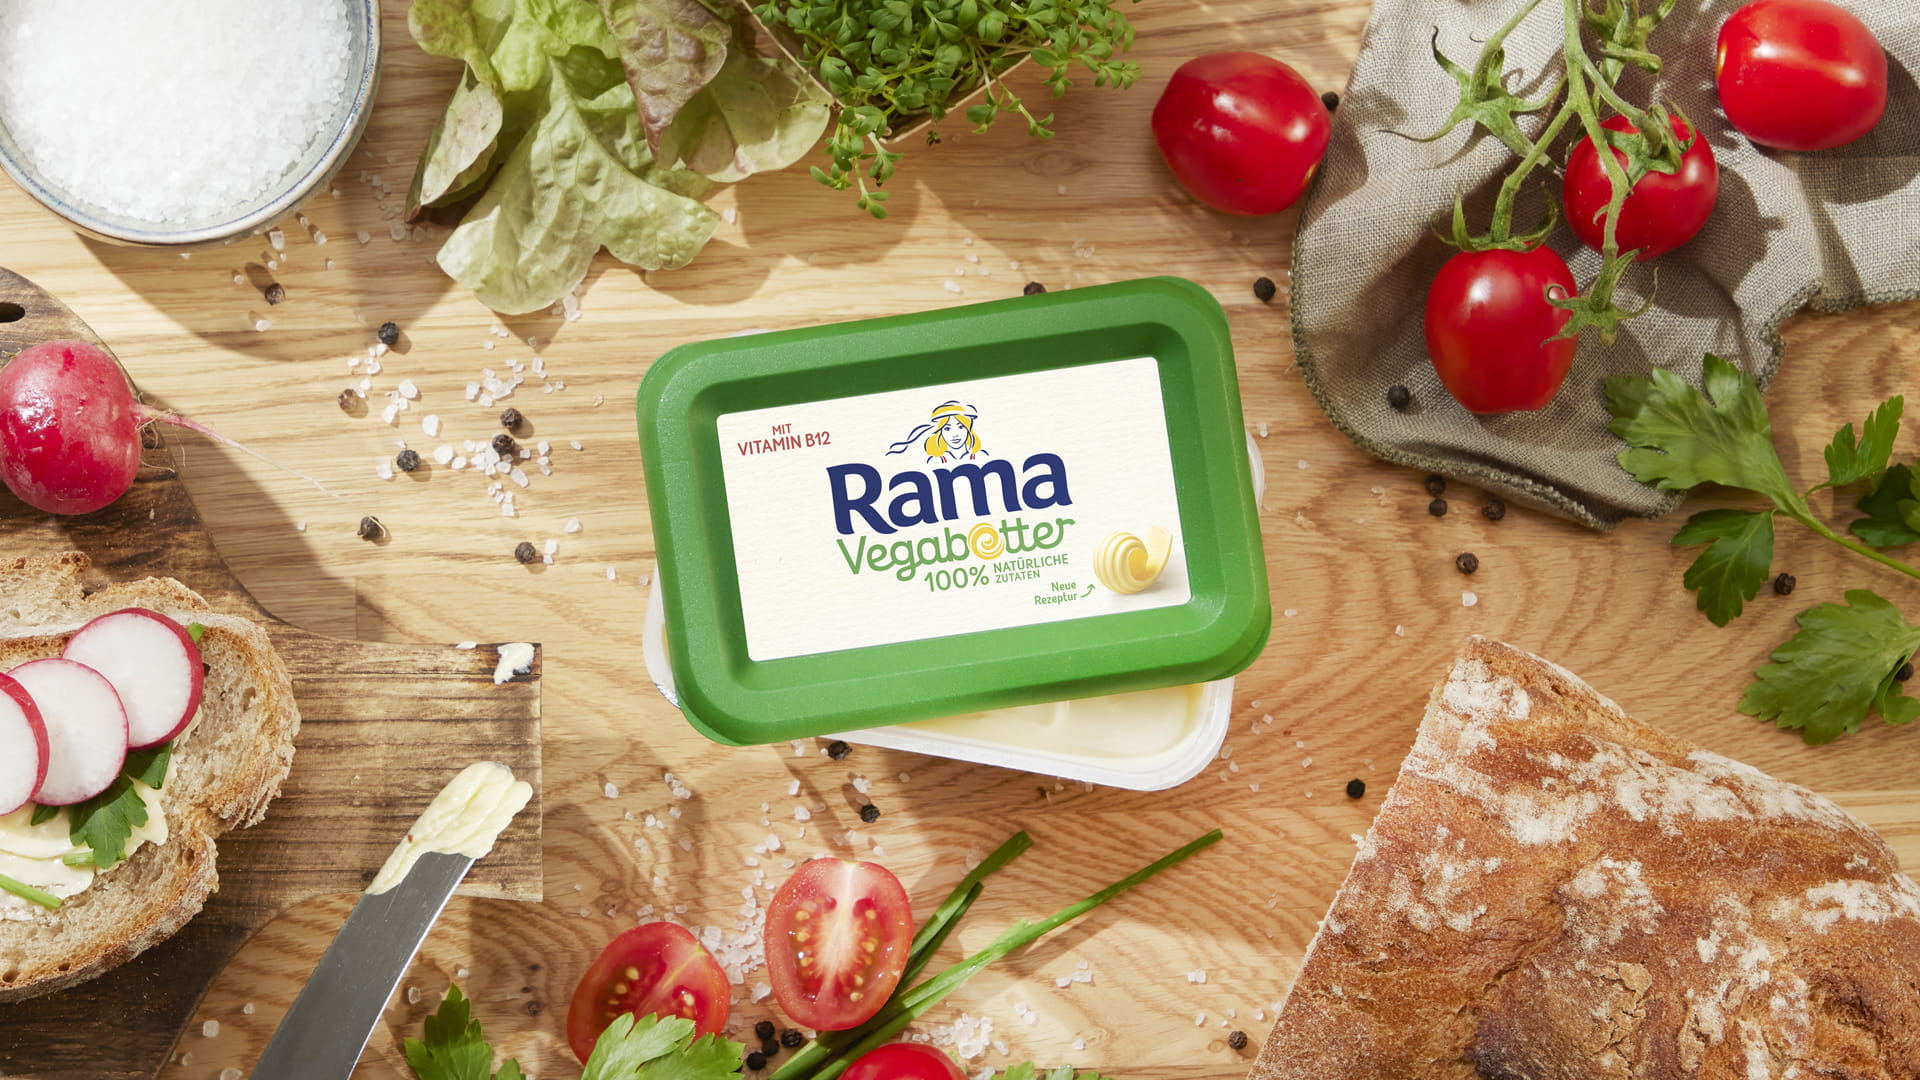 Rama 100% natürliche Zutaten Butternote, Butternote mit Meersalz und Vegabetter